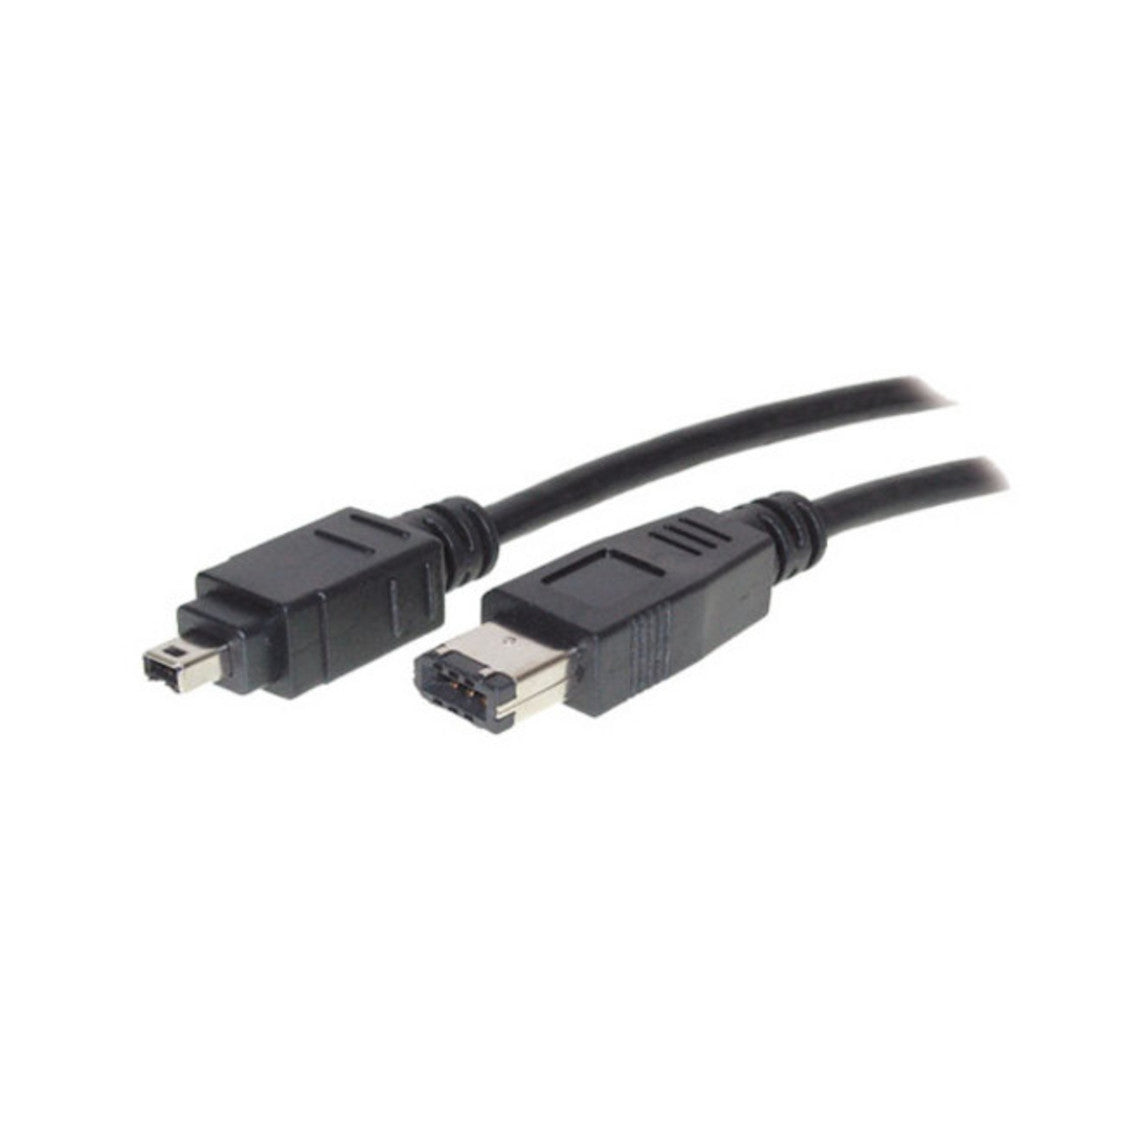 FireWire-Anschlusskabel, IEEE 1394 Kabel, 4-pol Stecker auf 6-pol Stecker, bis 400 MHz